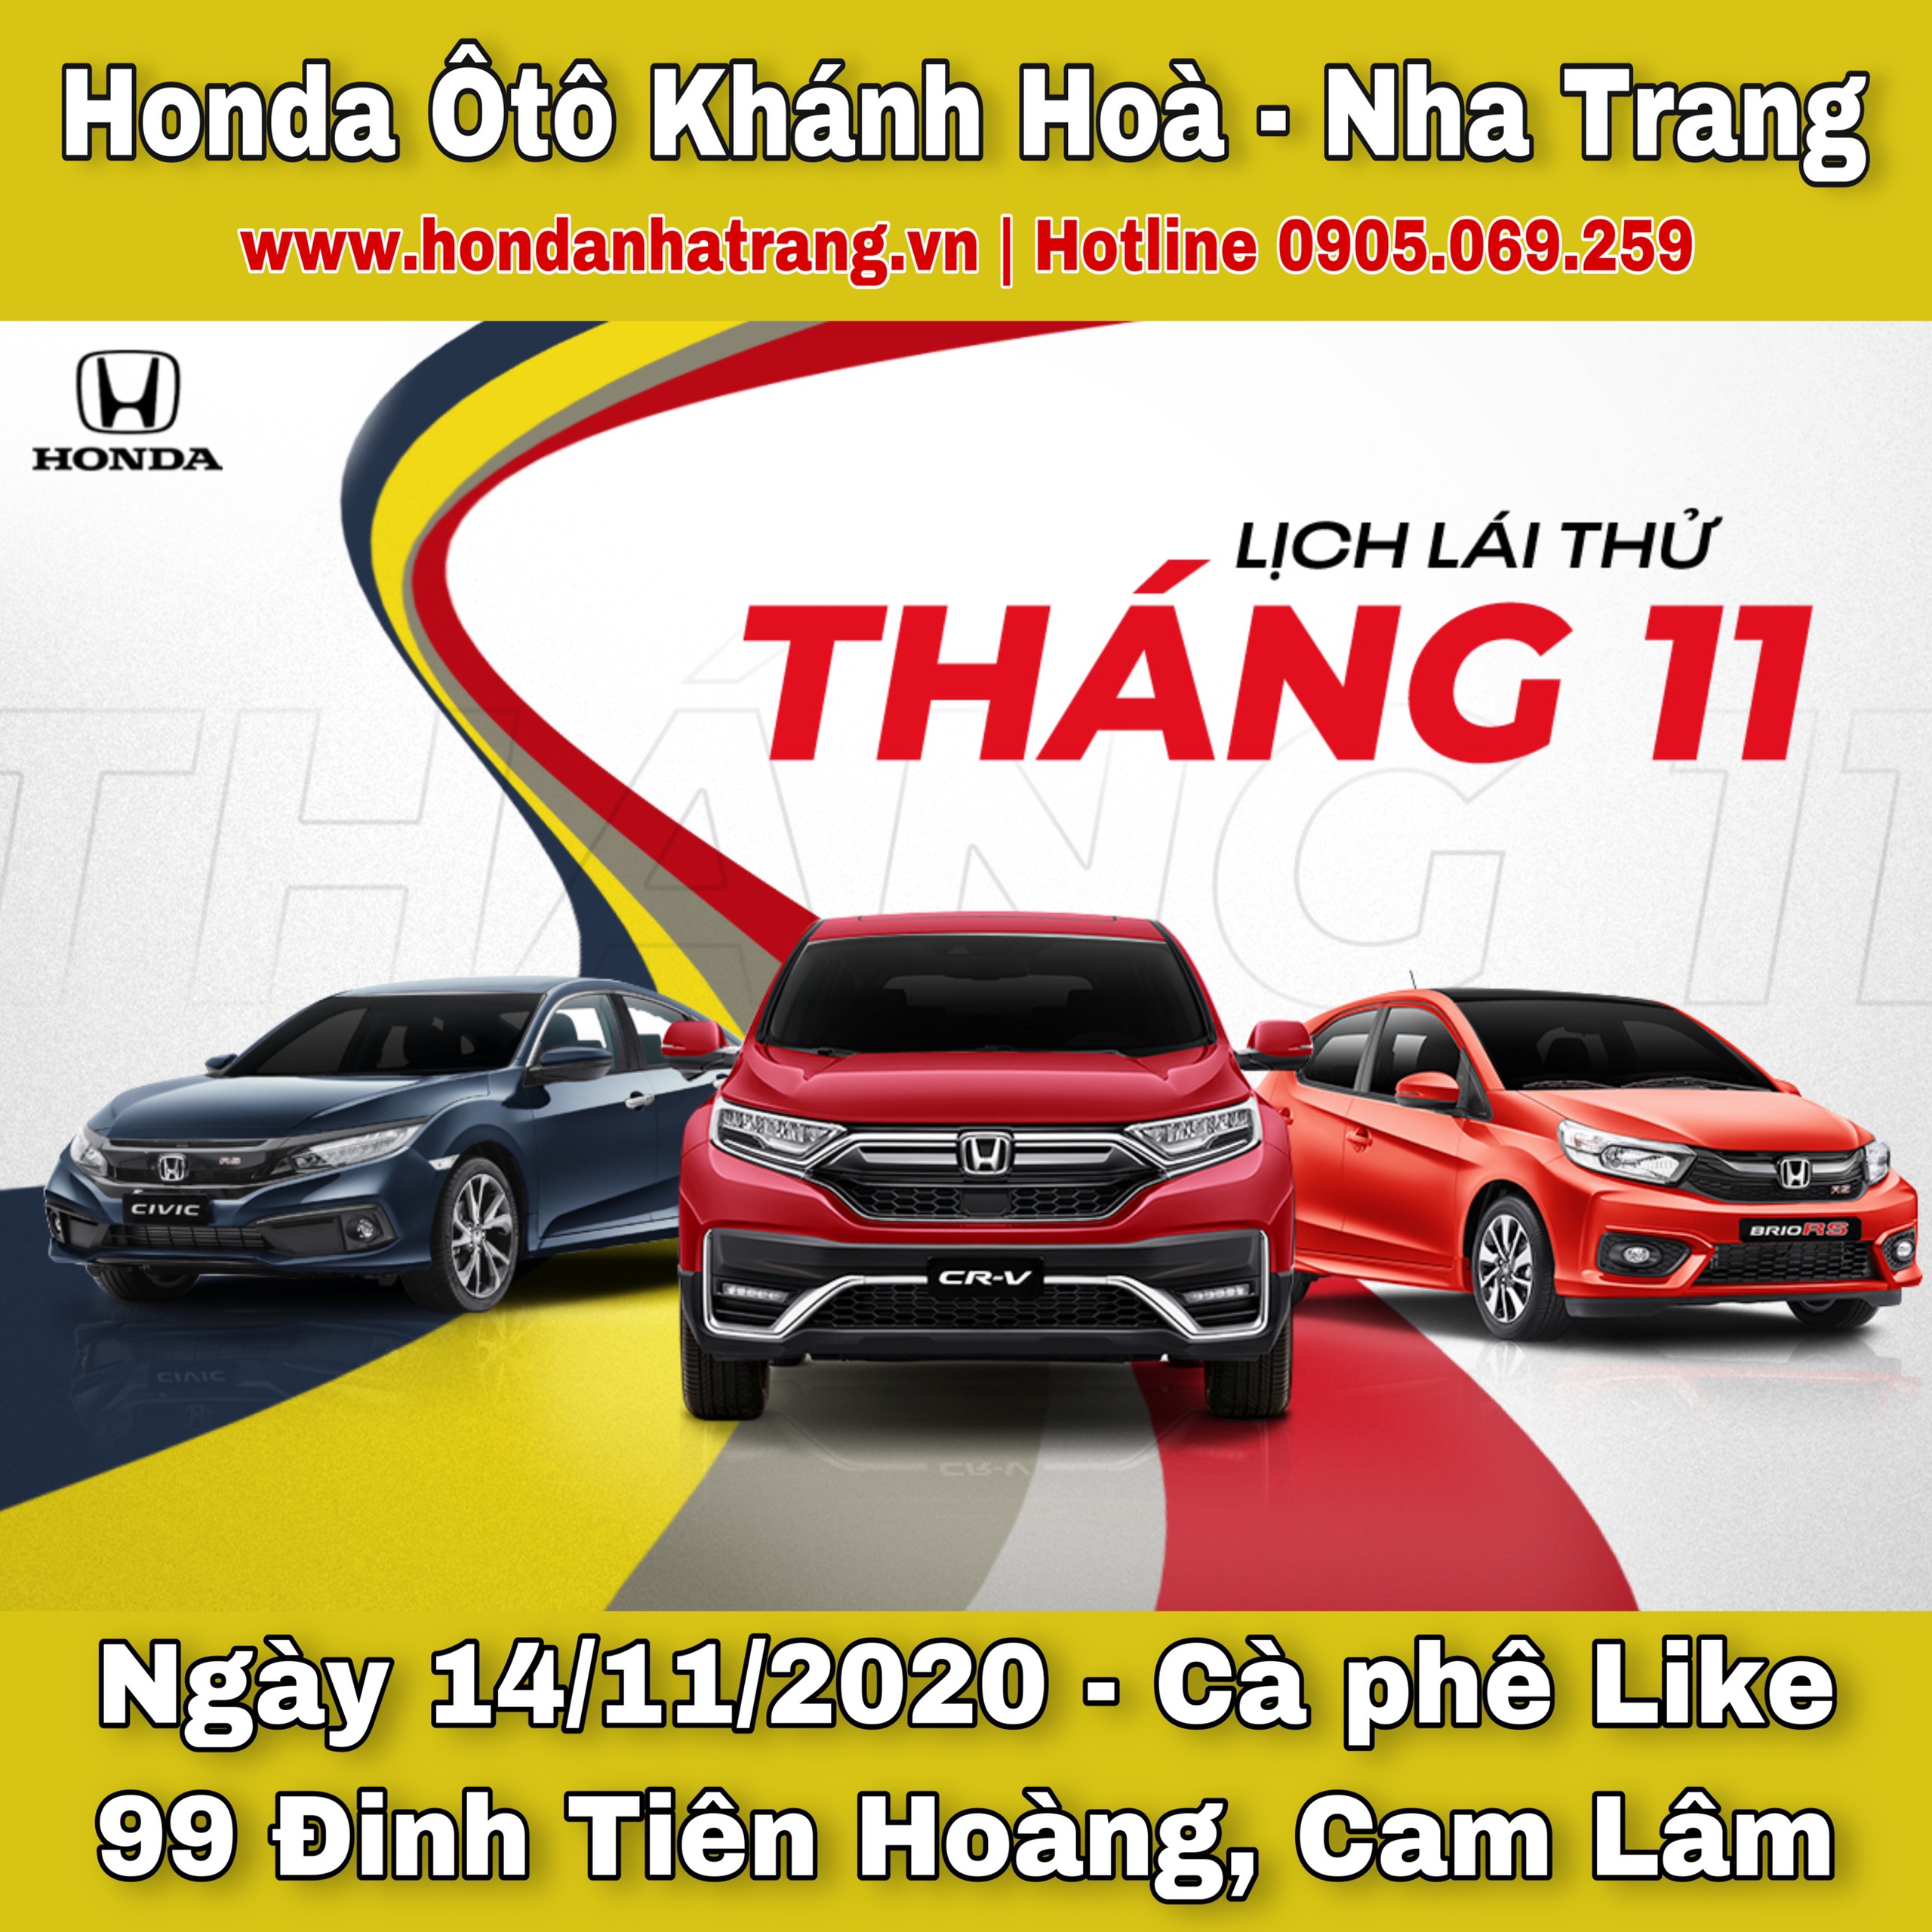 Lái thử Honda ô tô tại Cam Lâm tháng 11-2020. Liên hệ đại lý Honda Ô tô Khánh Hòa - Nha Trang - 0905 069 259.